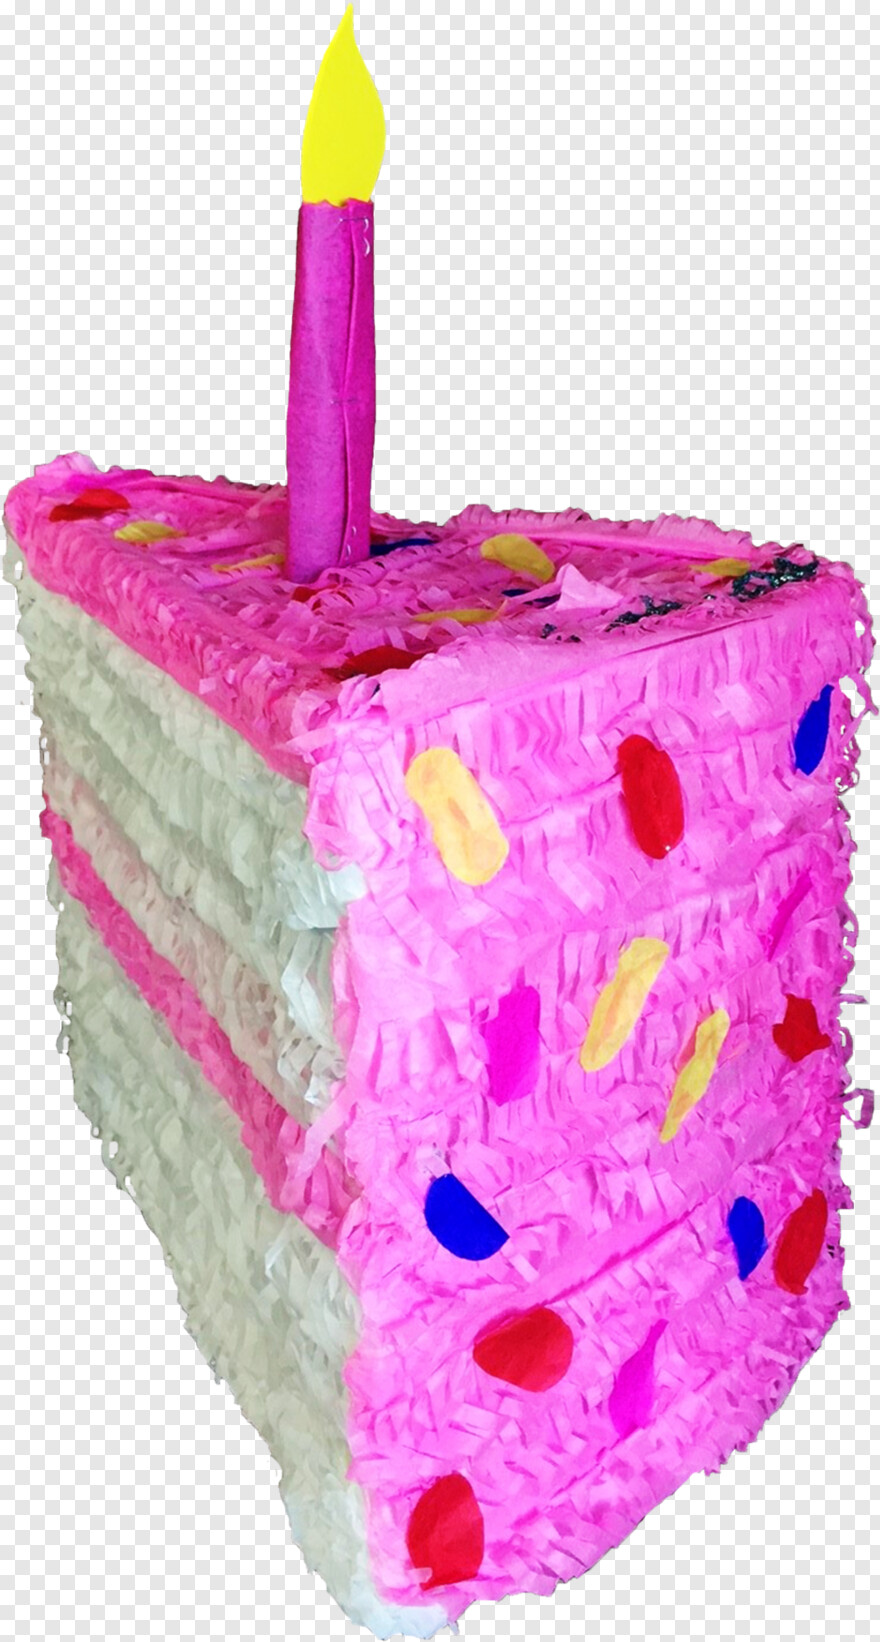 1st-birthday-cake # 359448